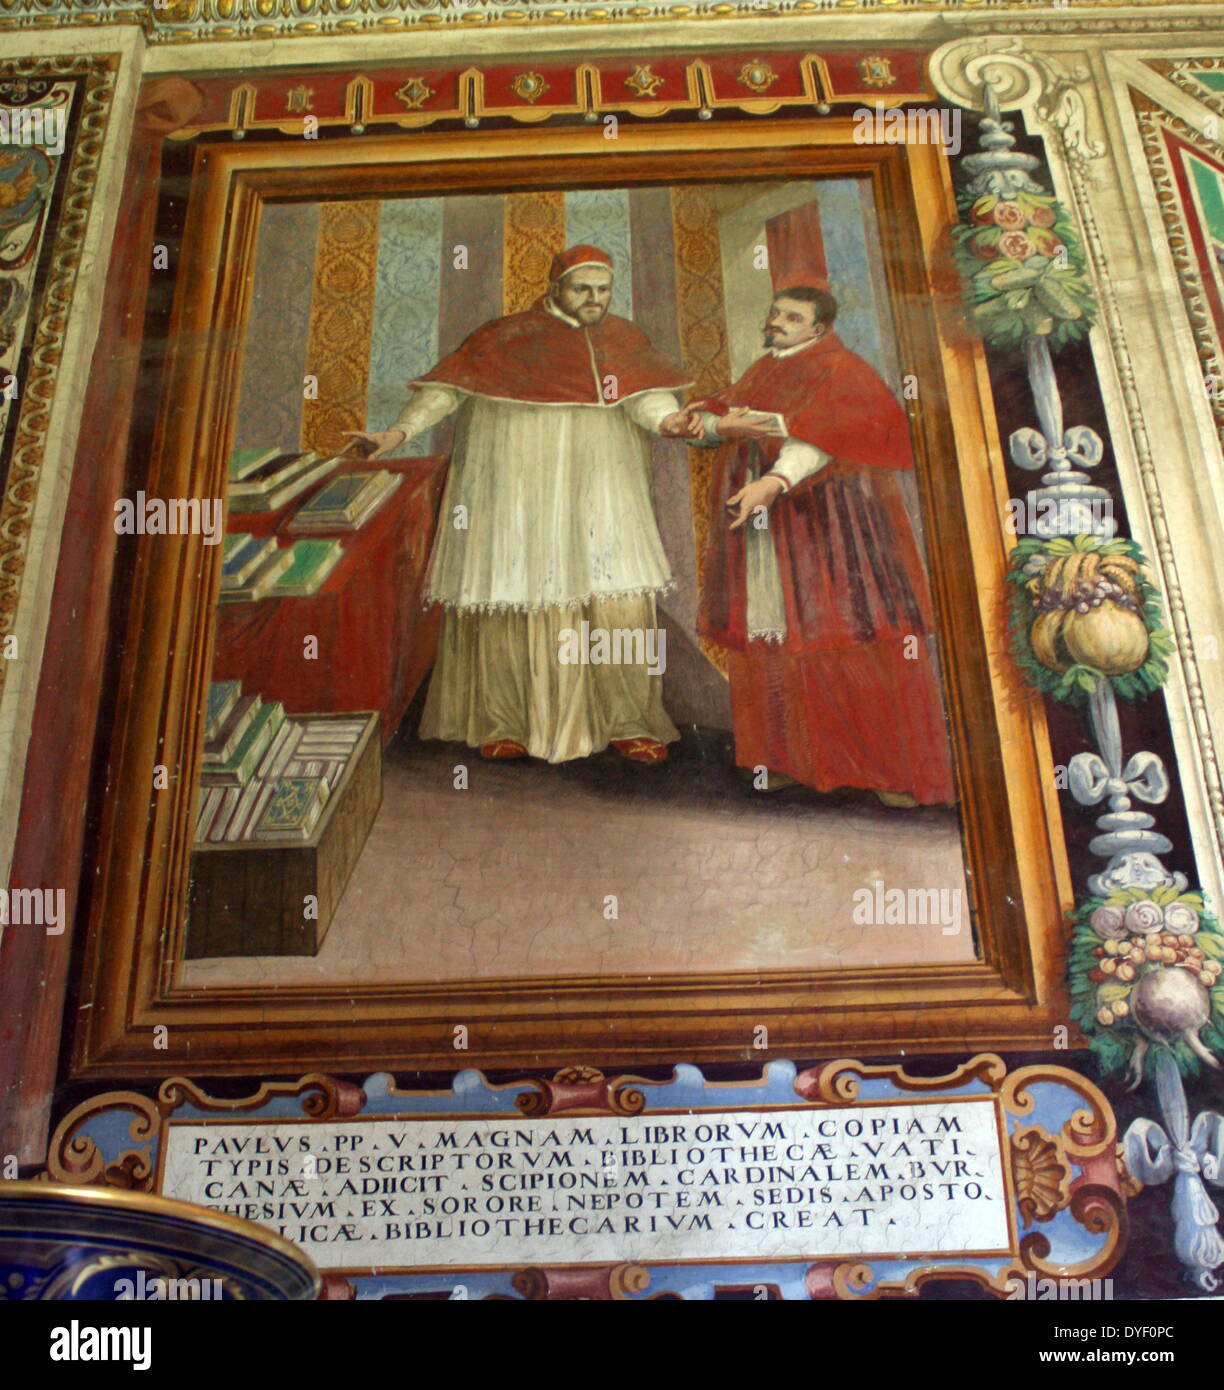 Die Vatikanischen Museen, eine riesige Sammlung der klassischen Detail, Renaissance Meisterwerke etc., die im frühen 16. Jahrhundert von Papst Julius II. gegründet werden Sie als, einige der größten Museen der Welt. Dieses Bild zeigt einen Teil der wunderschön bemalten Wänden. Stockfoto